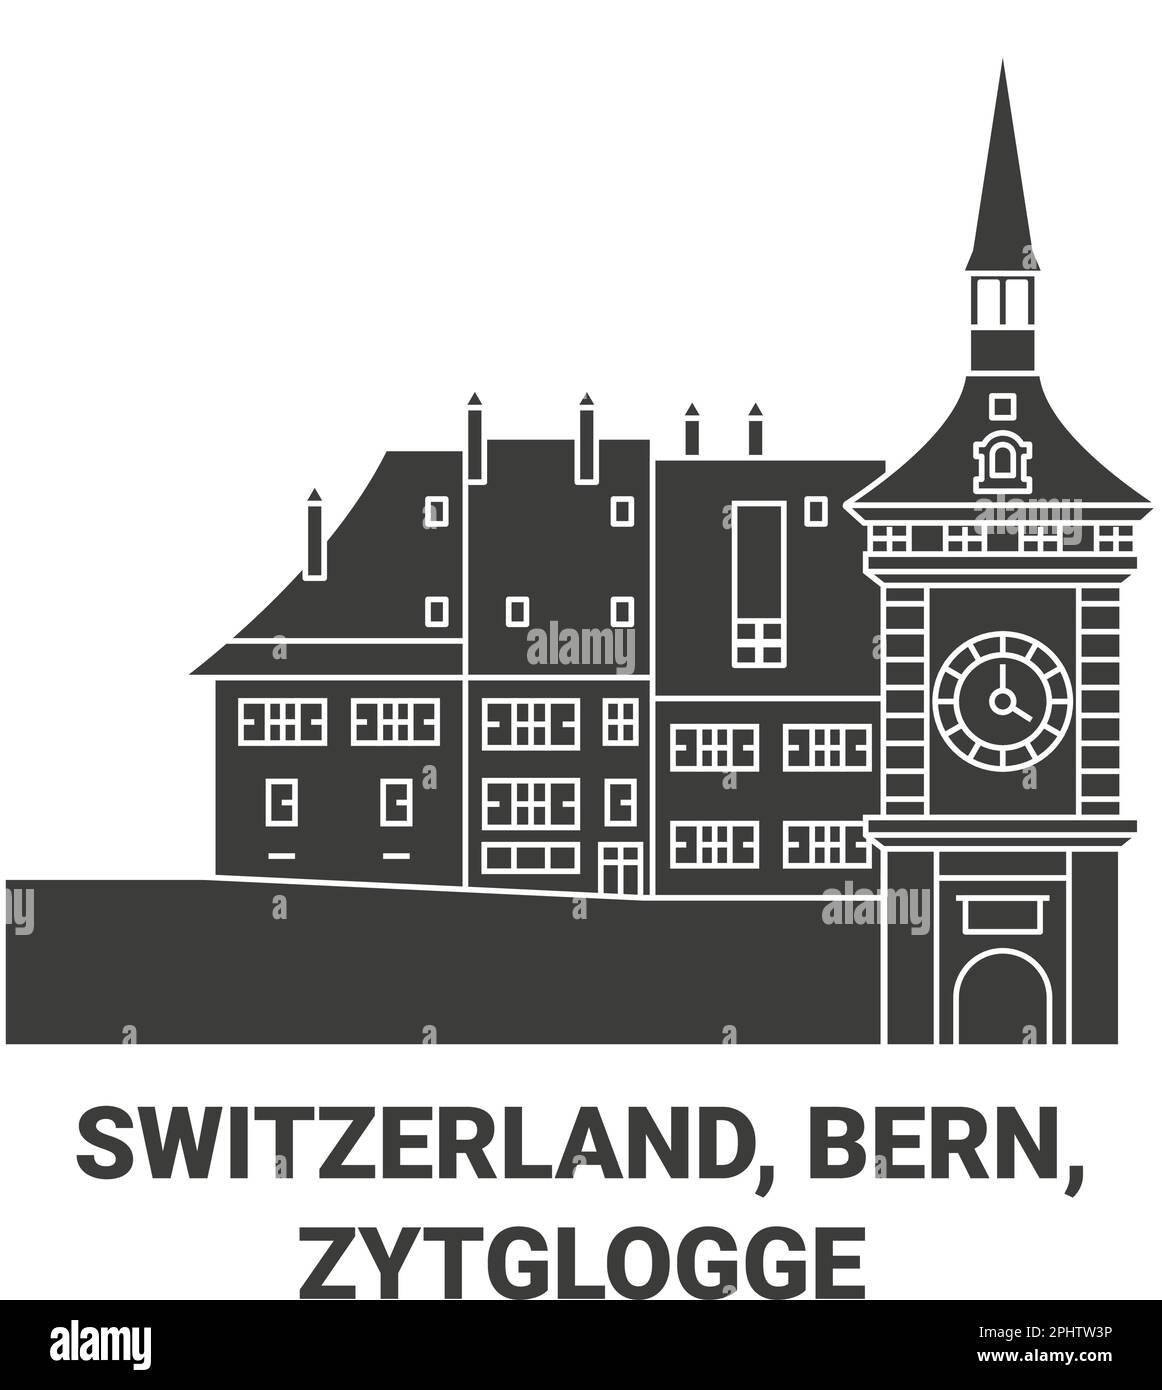 Suisse, Berne, Zytglogge Voyage repère illustration vecteur Illustration de Vecteur